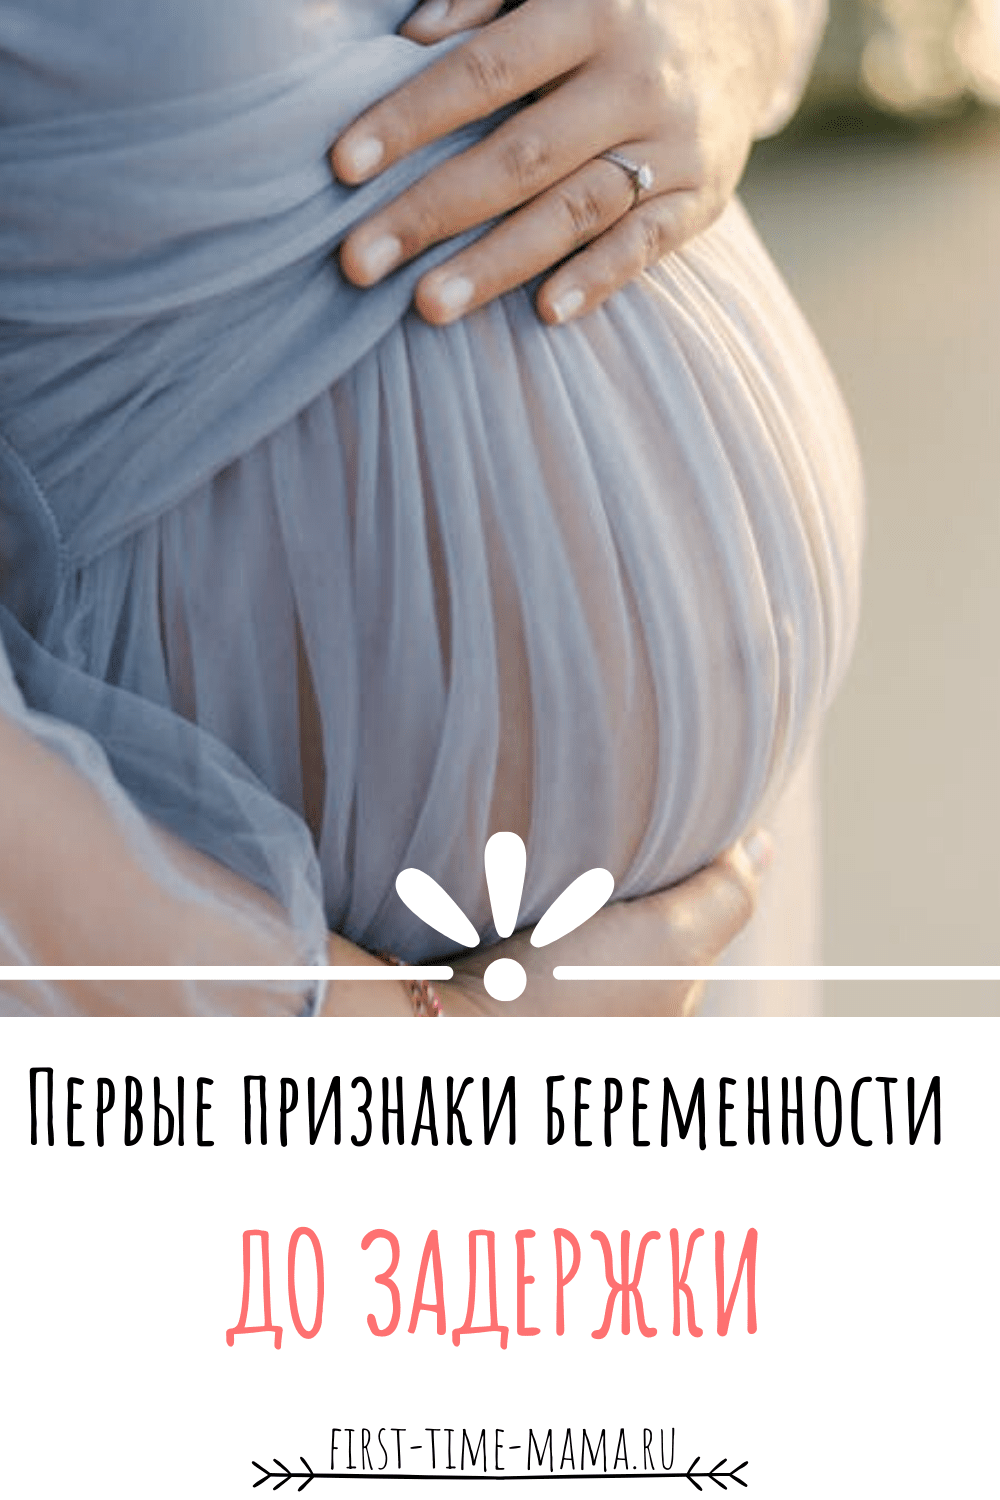 Первые признаки беременности | Впервые мама (First-time-mama.ru)